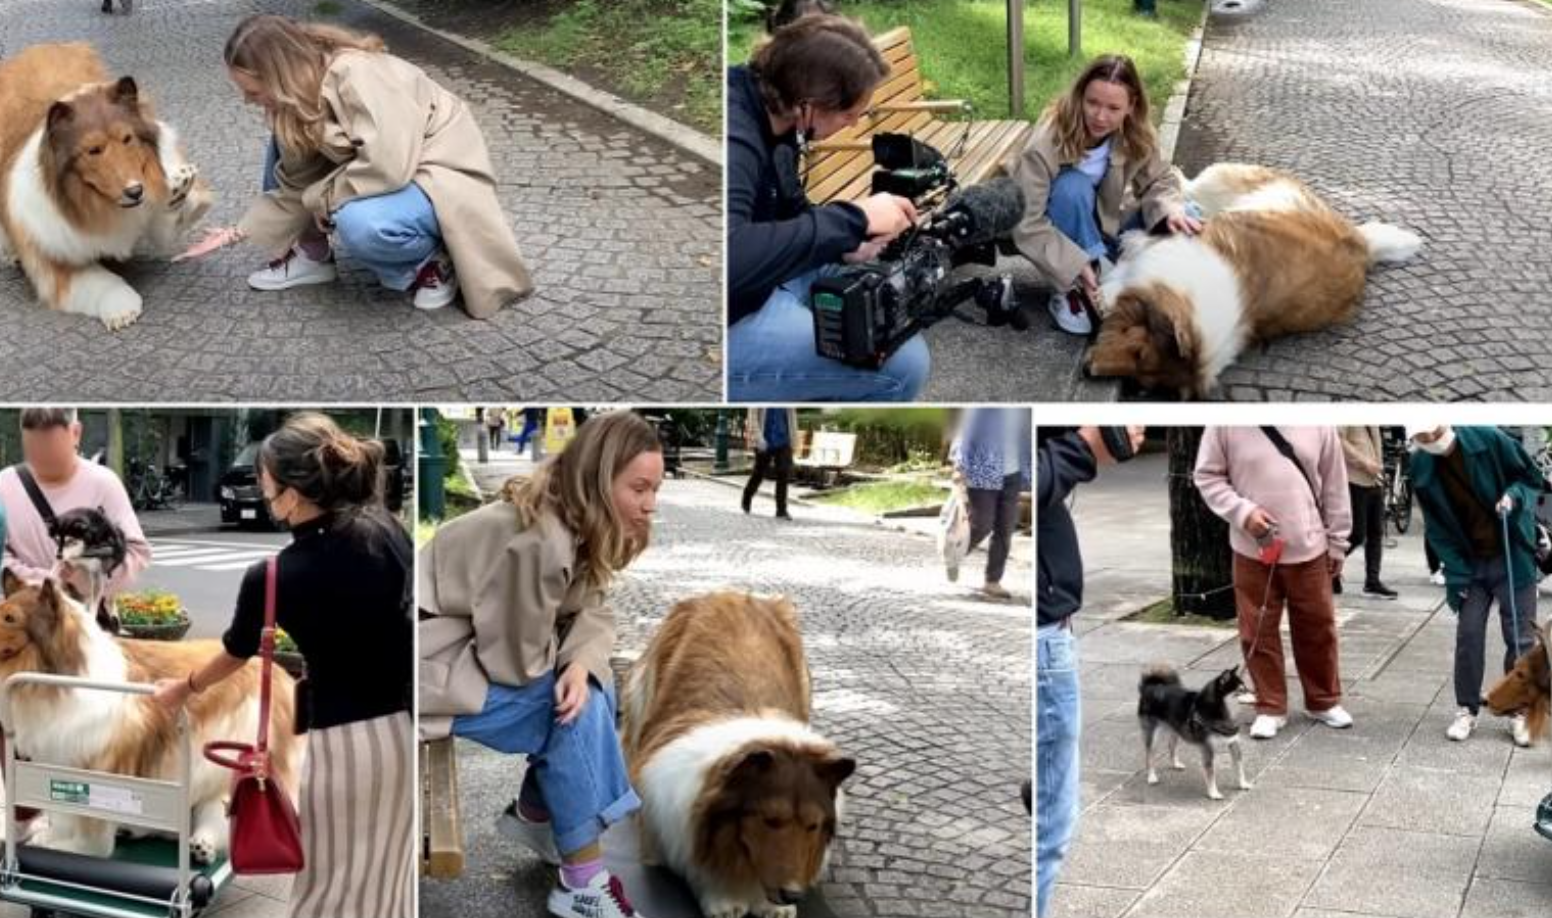 Japonezul care a cheltuit 13.000 de euro ca să devină câine și-a făcut prima apariție în public, ca un Collie. Vrea să testeze reacțiile animalelor